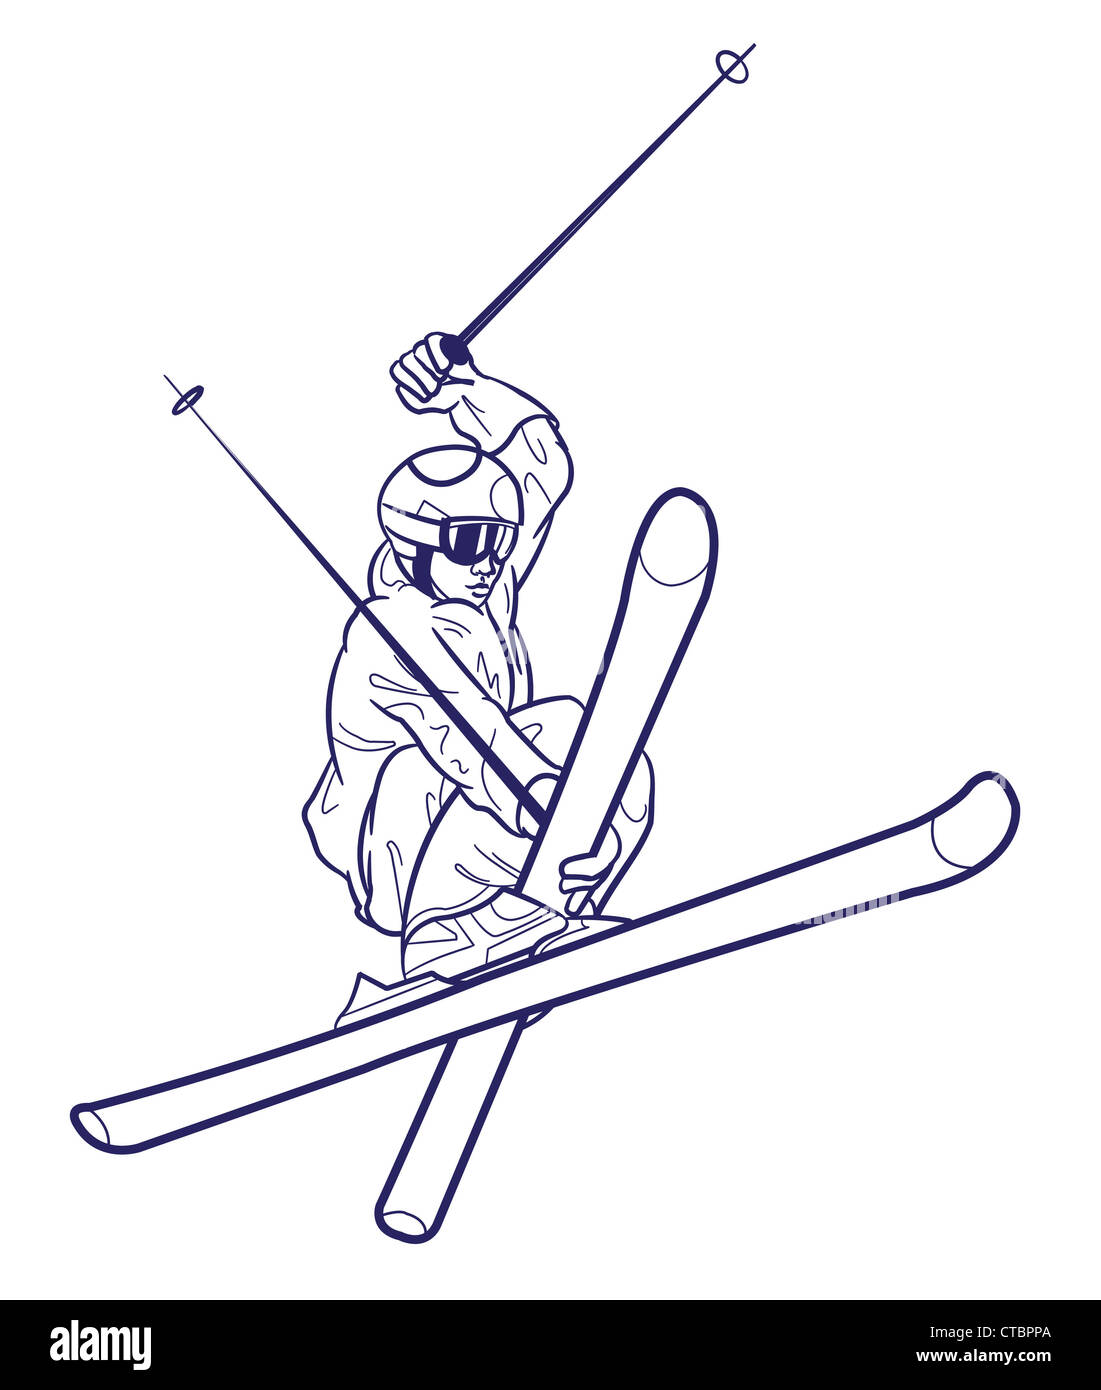 Le dessin des lignes de personne le ski. Banque D'Images